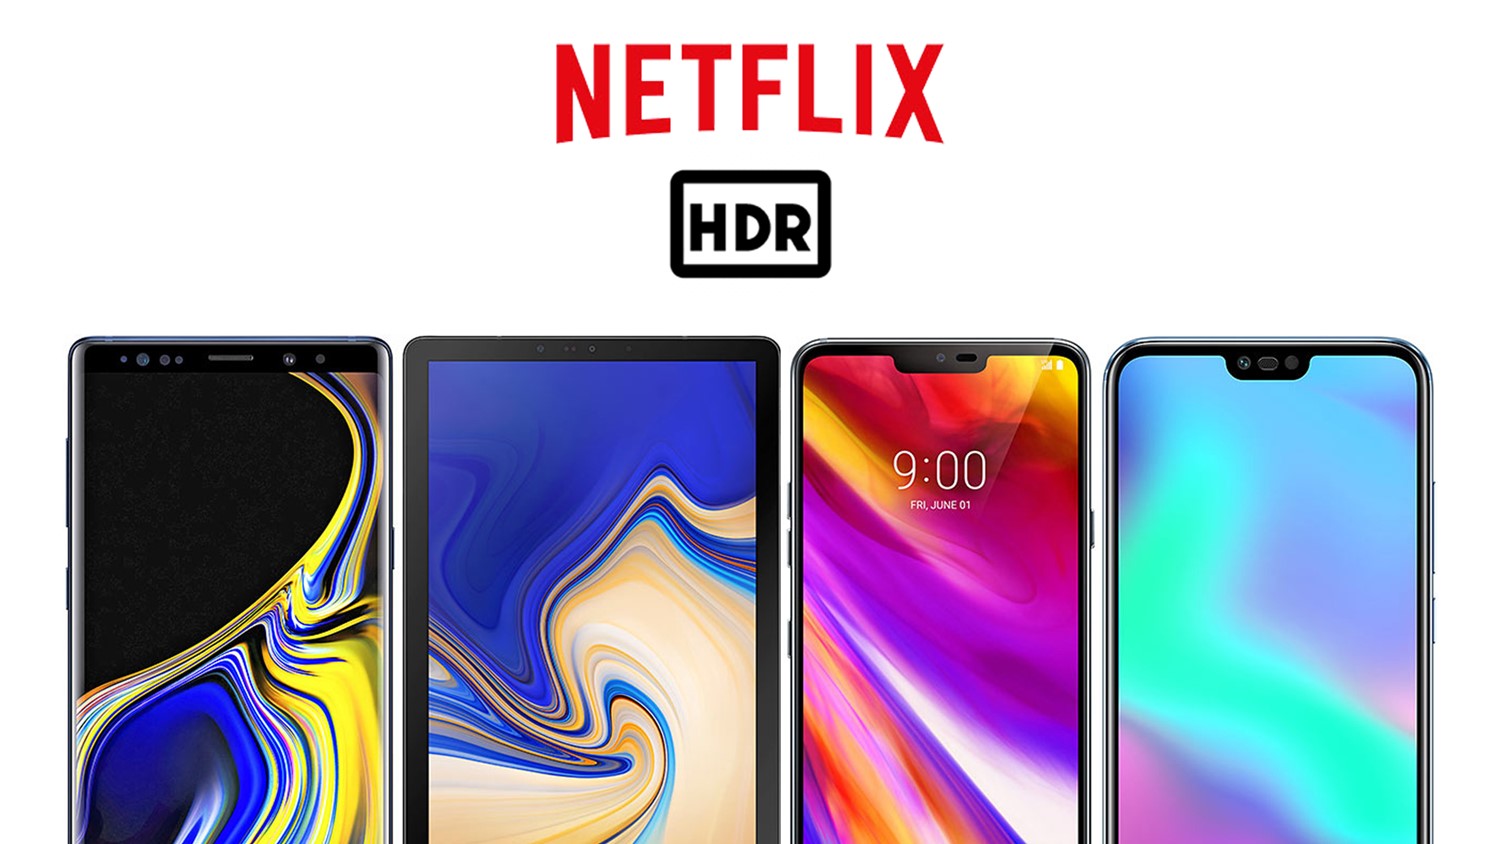 Sokongan Netflix HDR Untuk Galaxy Note 9, Tab S4, Honor 10, LG G7 Dan V35 Diaktifkan